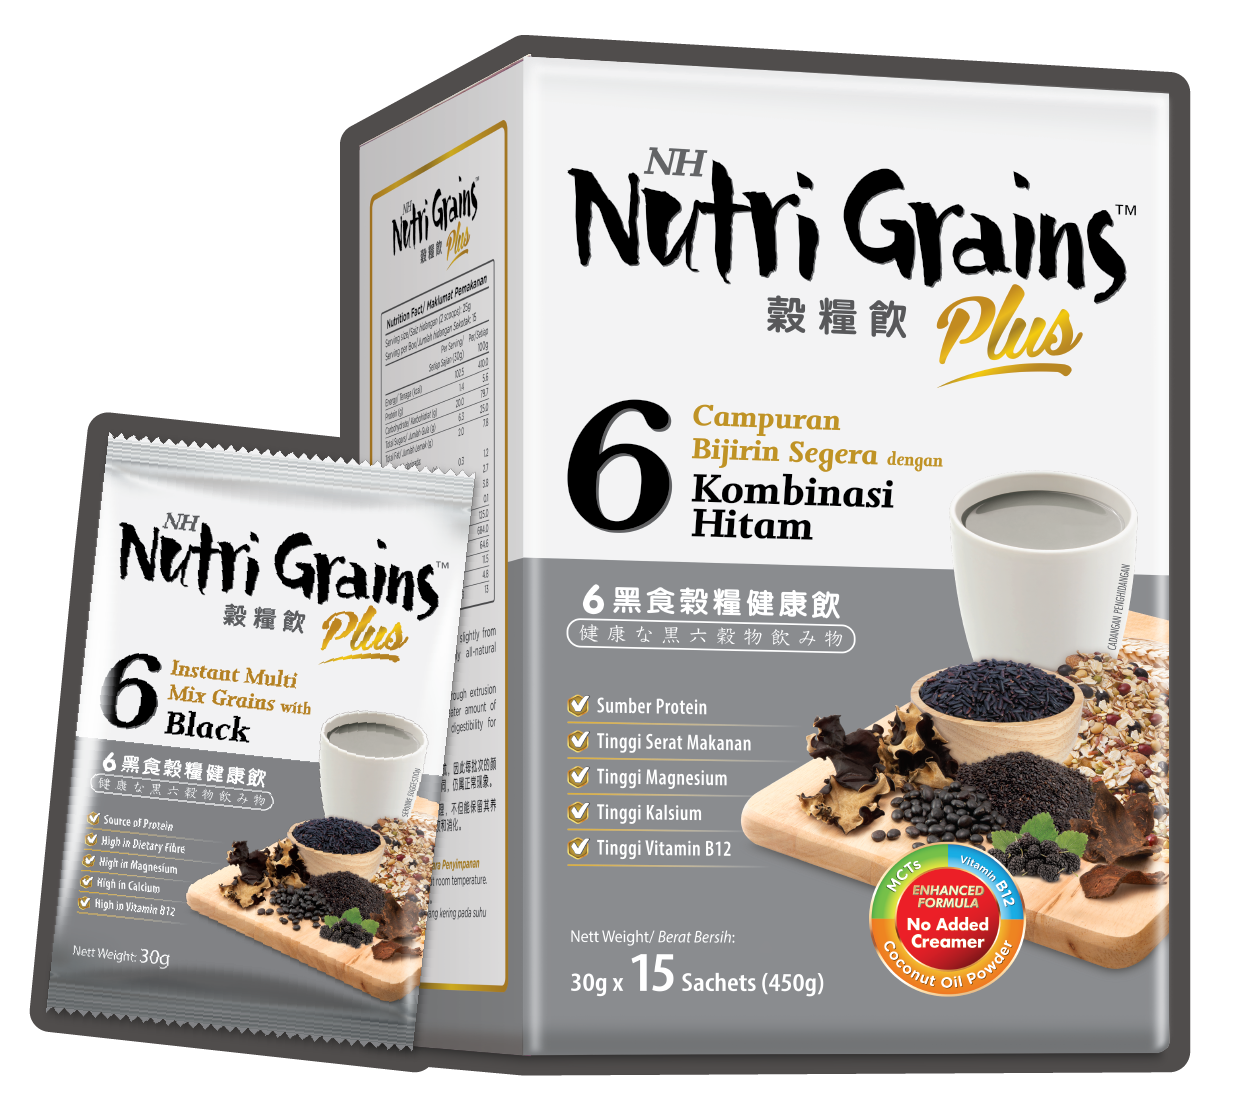 NH Nutri Grains_NLP DPS231223_2